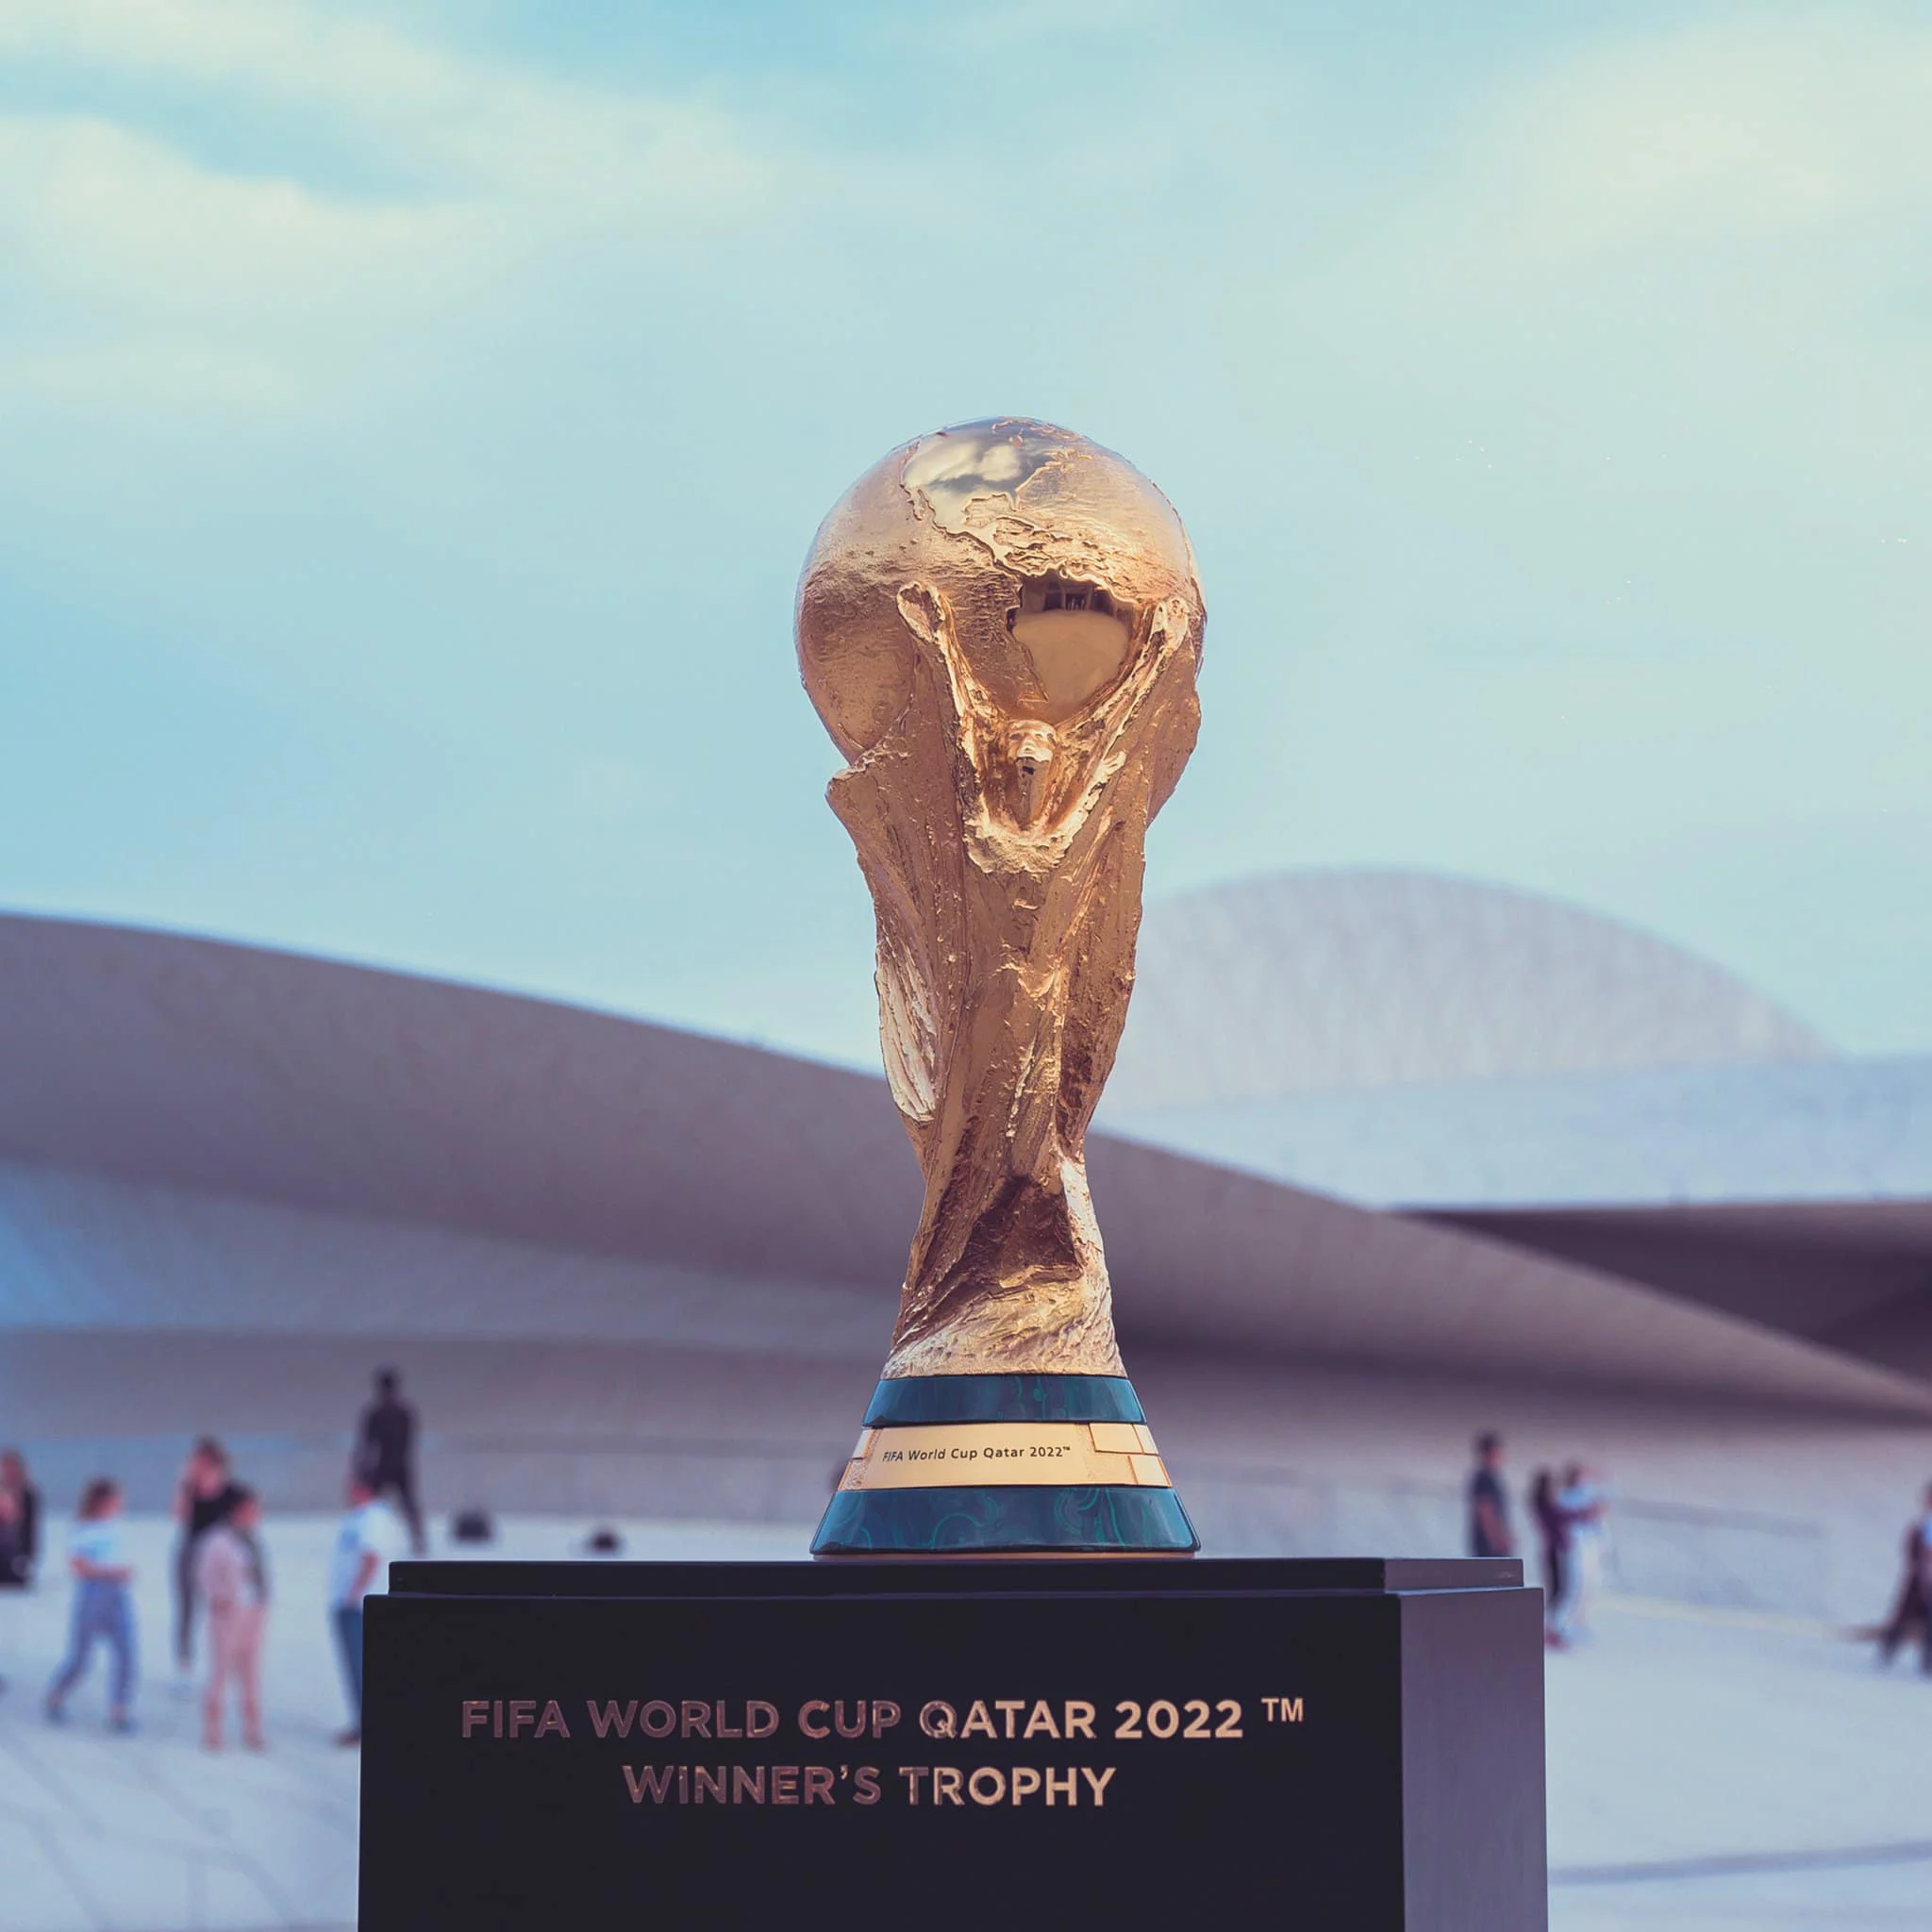 المنتخبات الاعلى والاقل قيمة سوقية في مونديال قطر 2022